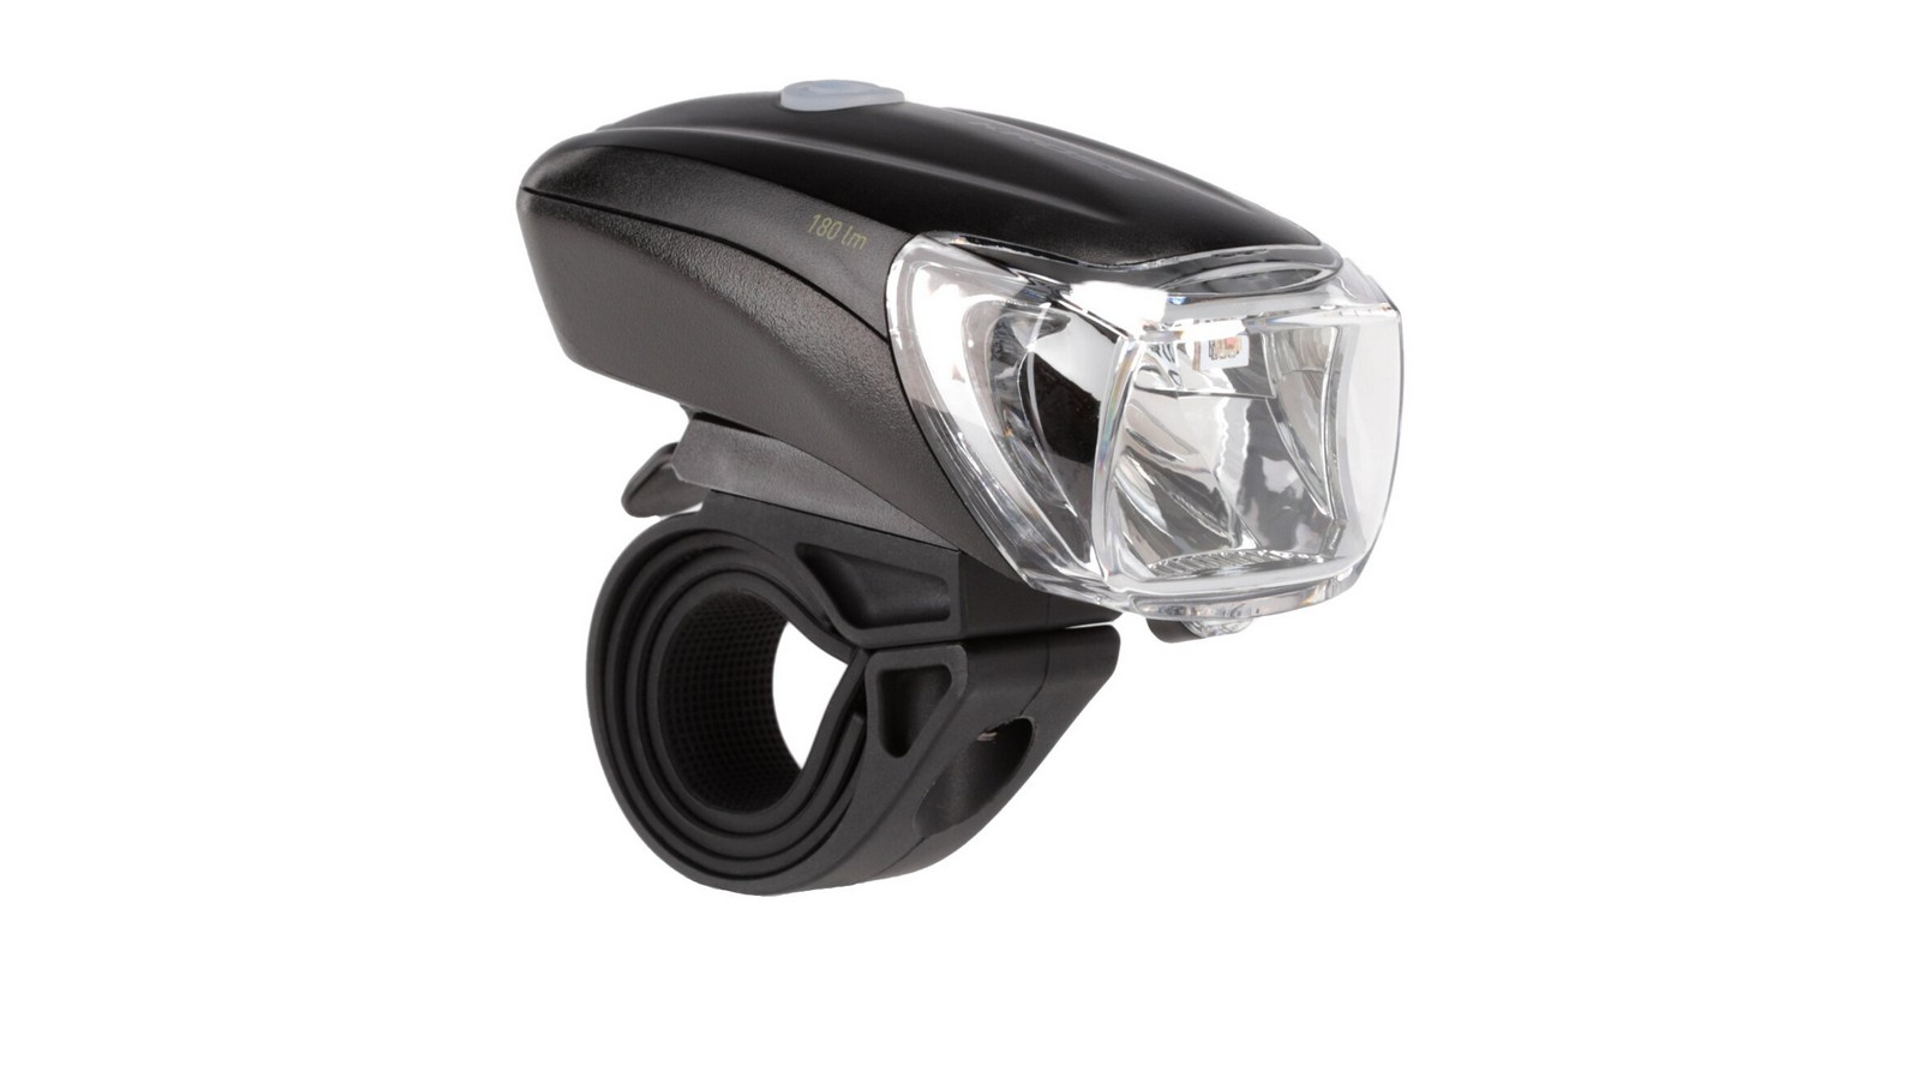 KROSS Turismo Pro USB újratölthető első lámpa, 180 lumen, mozgás- és fényérzékelős